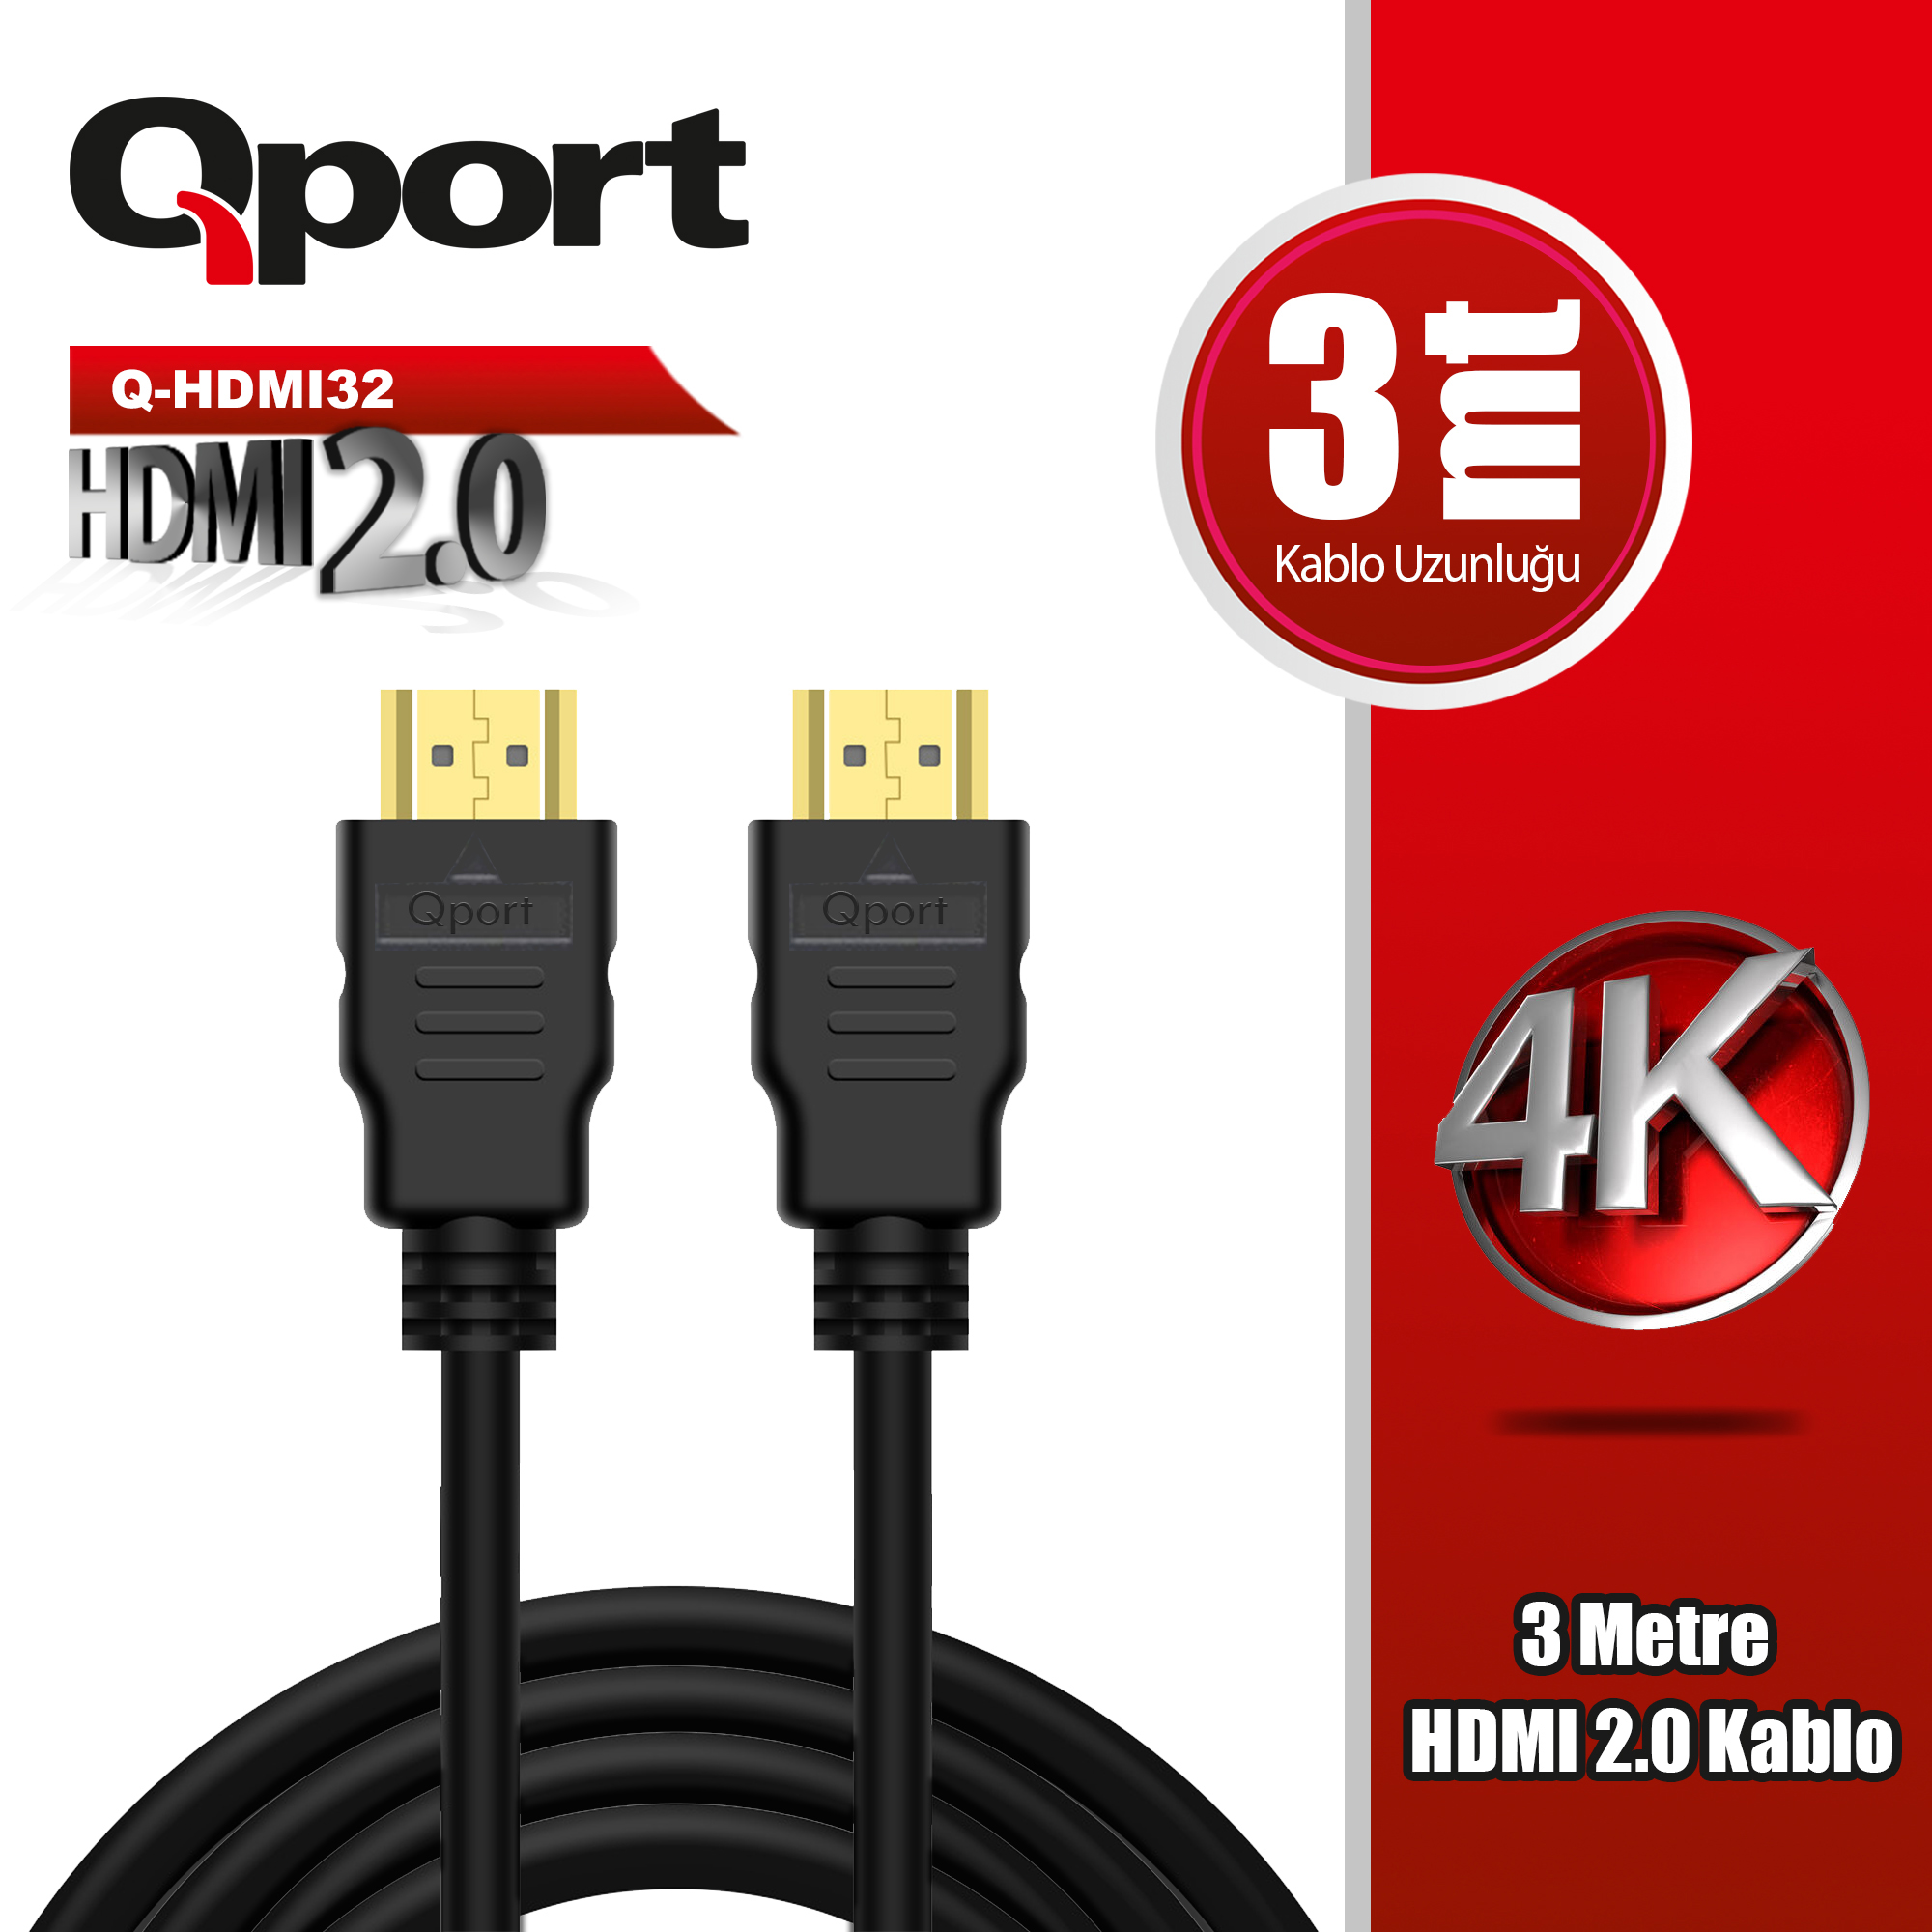 QPORT (Q-HDMI32) ALTIN UCLU 3M 4K HDMI2.0 KABLO